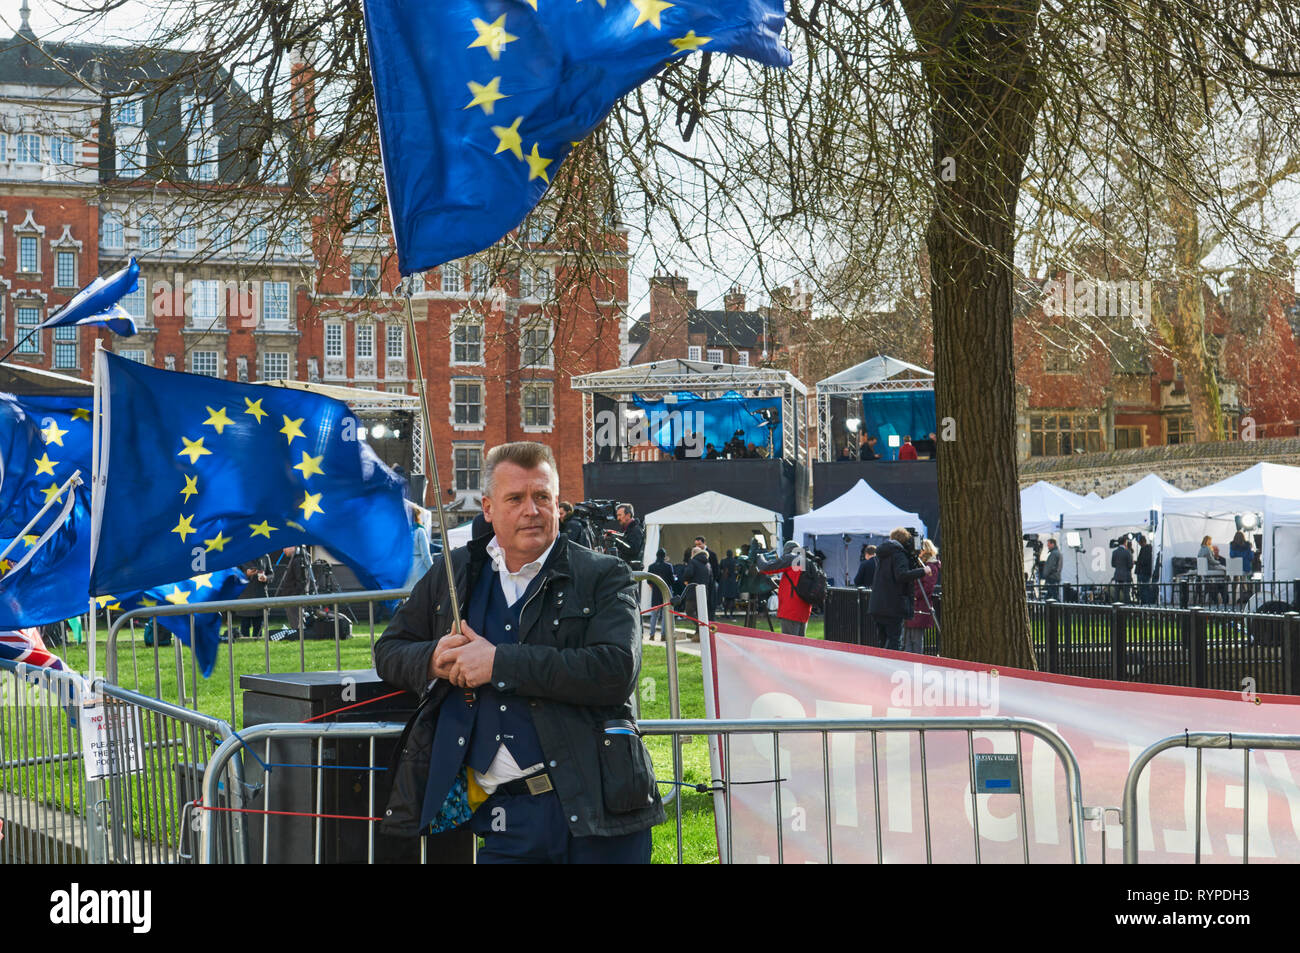 Westminster, Londra, Regno Unito. 14 mar 2019. Il dimostratore con la bandiera dell'UE di fronte alla media circus al di fuori della casa del Parlamento, il 14 marzo 2019, il giorno in cui il Parlamento ha votato a favore del ritardo di credito Brexit: Richard Barnes/Alamy Live News Foto Stock